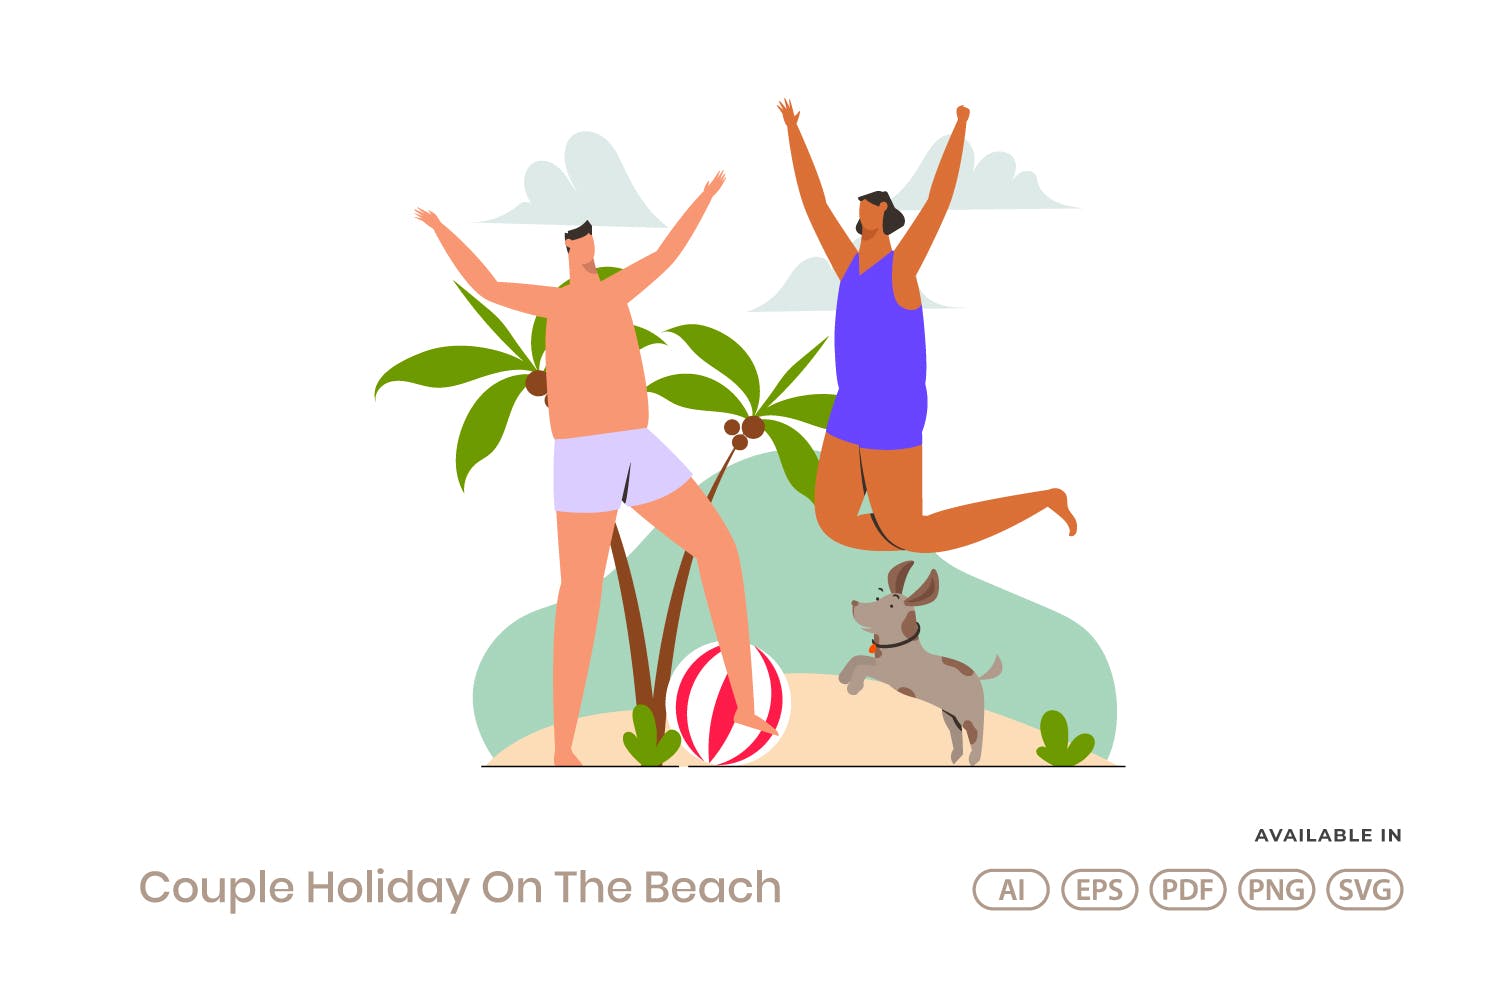 人物插画情侣海滩度假矢量素材 Couple Holiday On The Beach设计素材模板